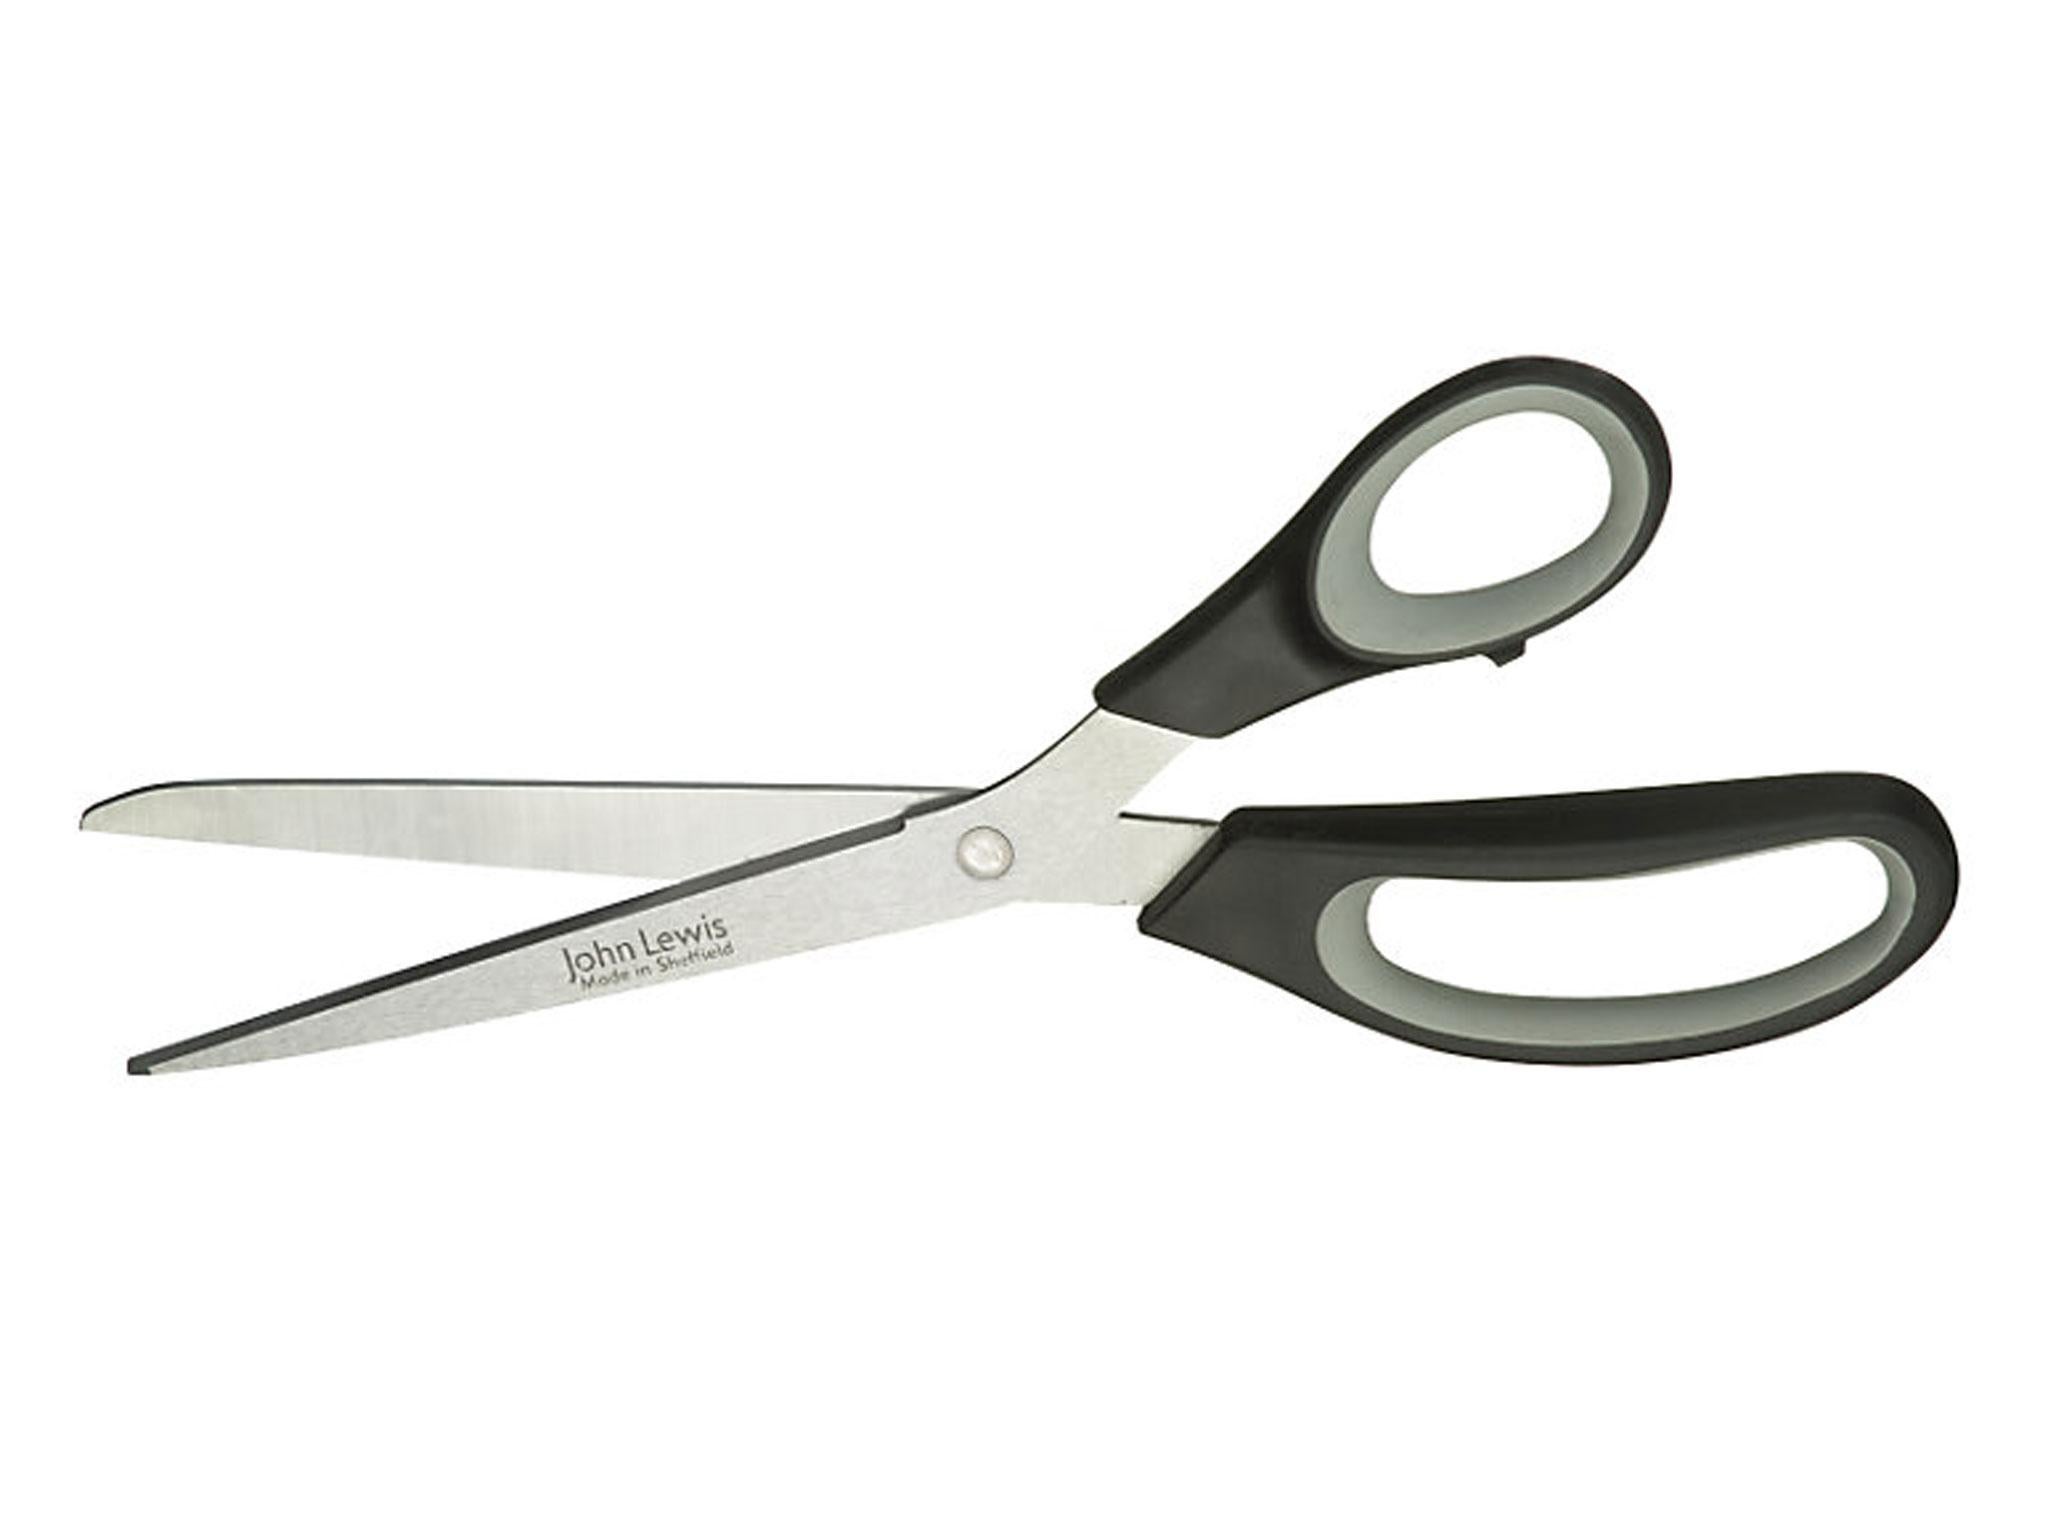 buy fabric scissors